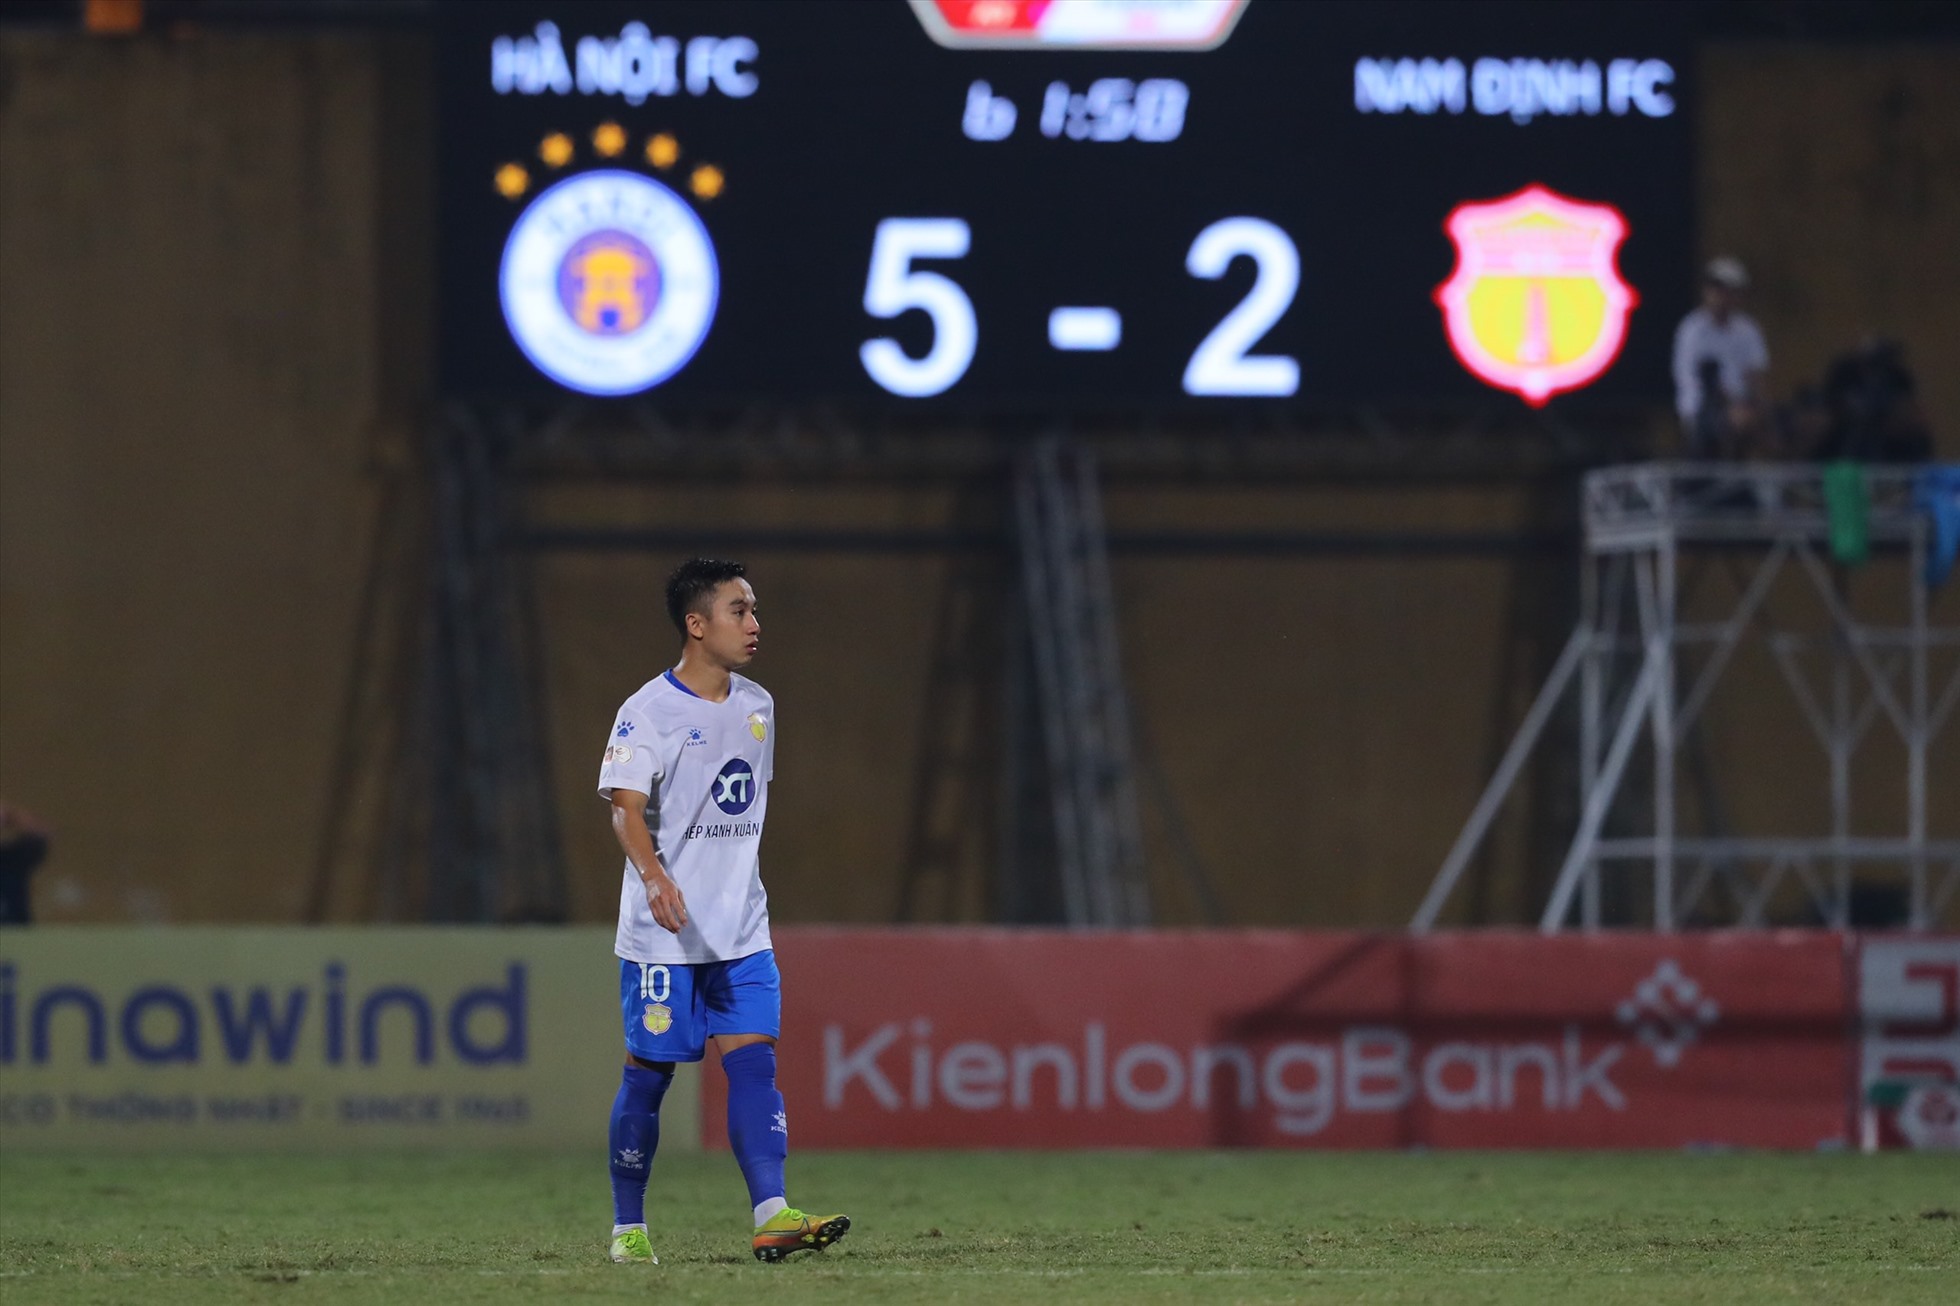 Chung cuộc, câu lạc bộ Nam Định thua đậm câu lạc bộ Hà Nội 5-2. Với 3 điểm có được, thầy trò huấn luyện viên Chun Jae-ho đang tiến rất gần tới chức vô địch mùa giải 2022.